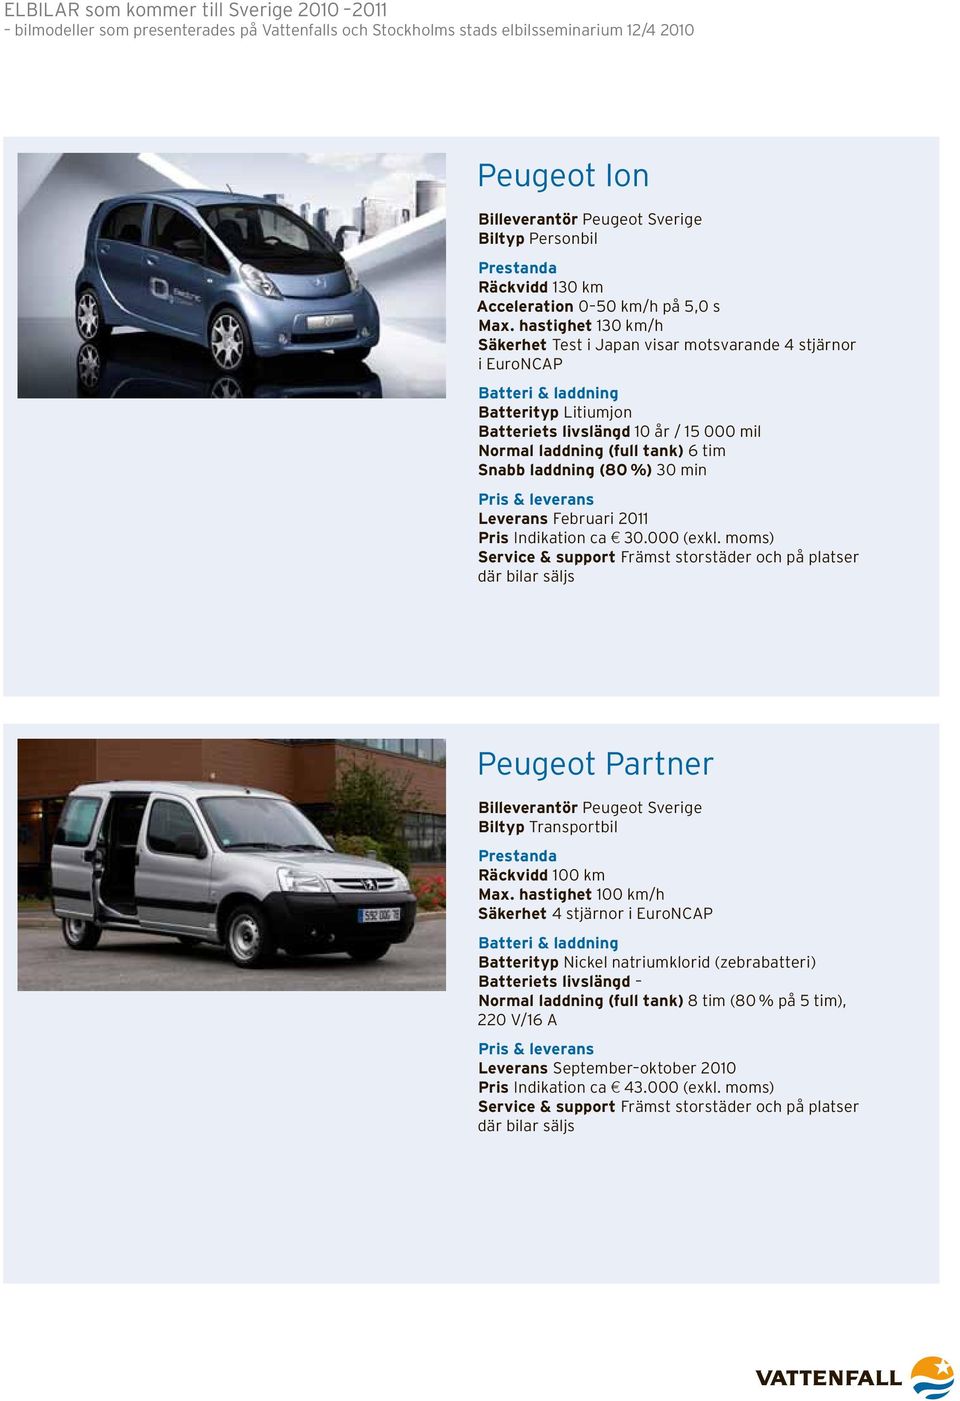 moms) Service & support Främst storstäder och på platser där bilar säljs Peugeot Partner Billeverantör Peugeot Sverige Biltyp Transportbil Räckvidd 100 km Max.